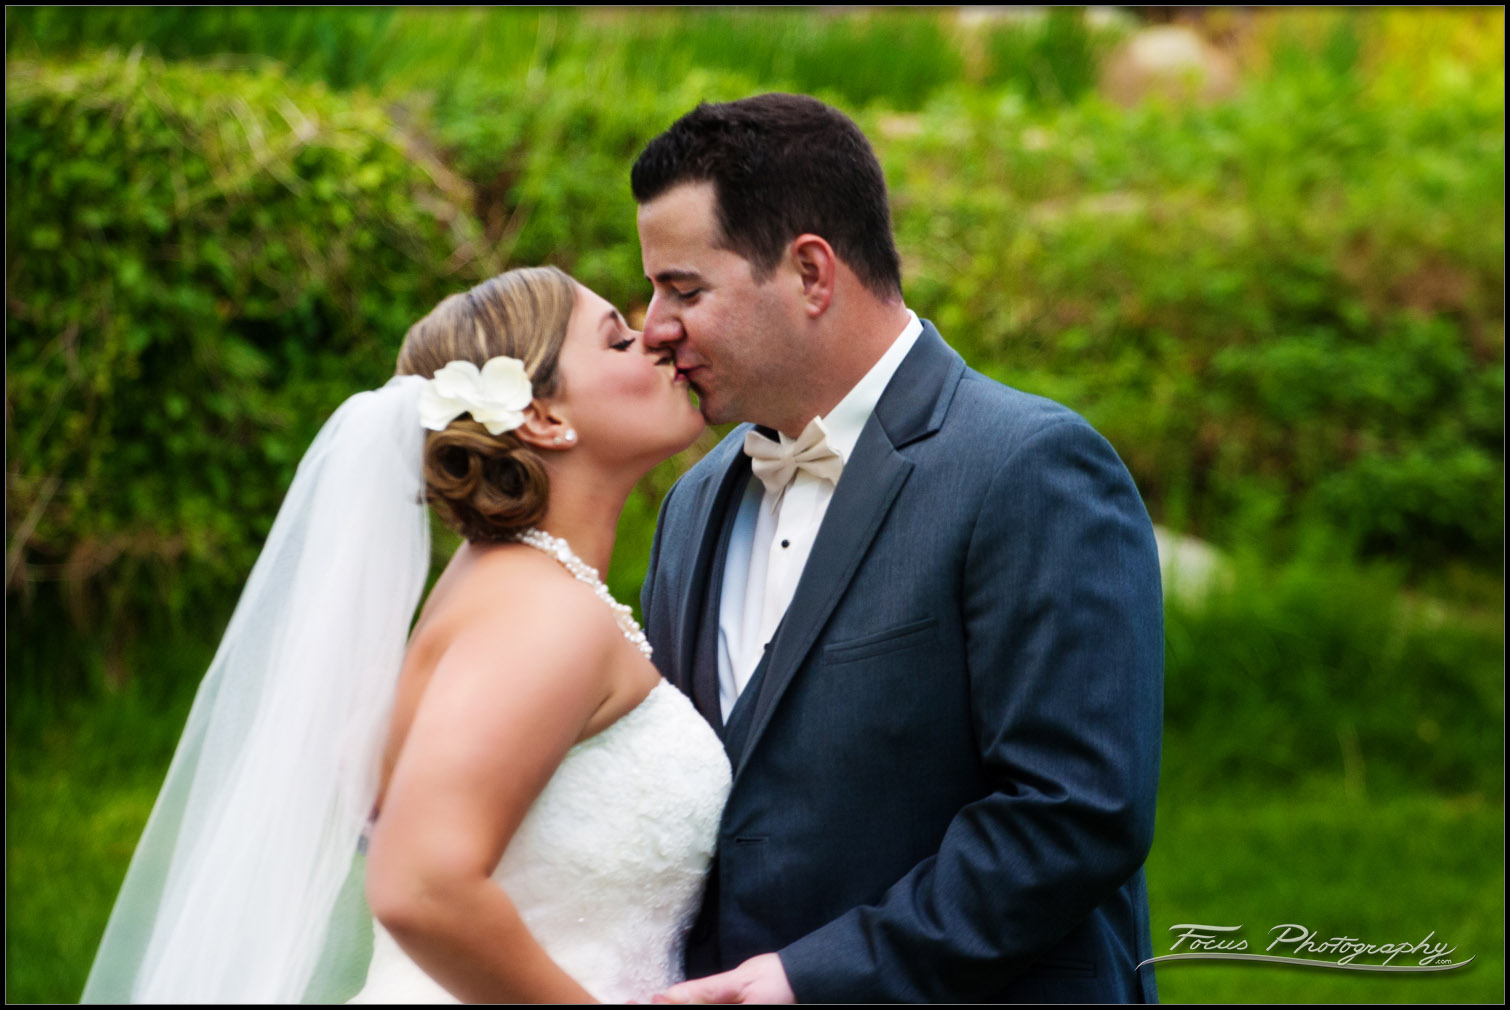 a kiss during wedding photos